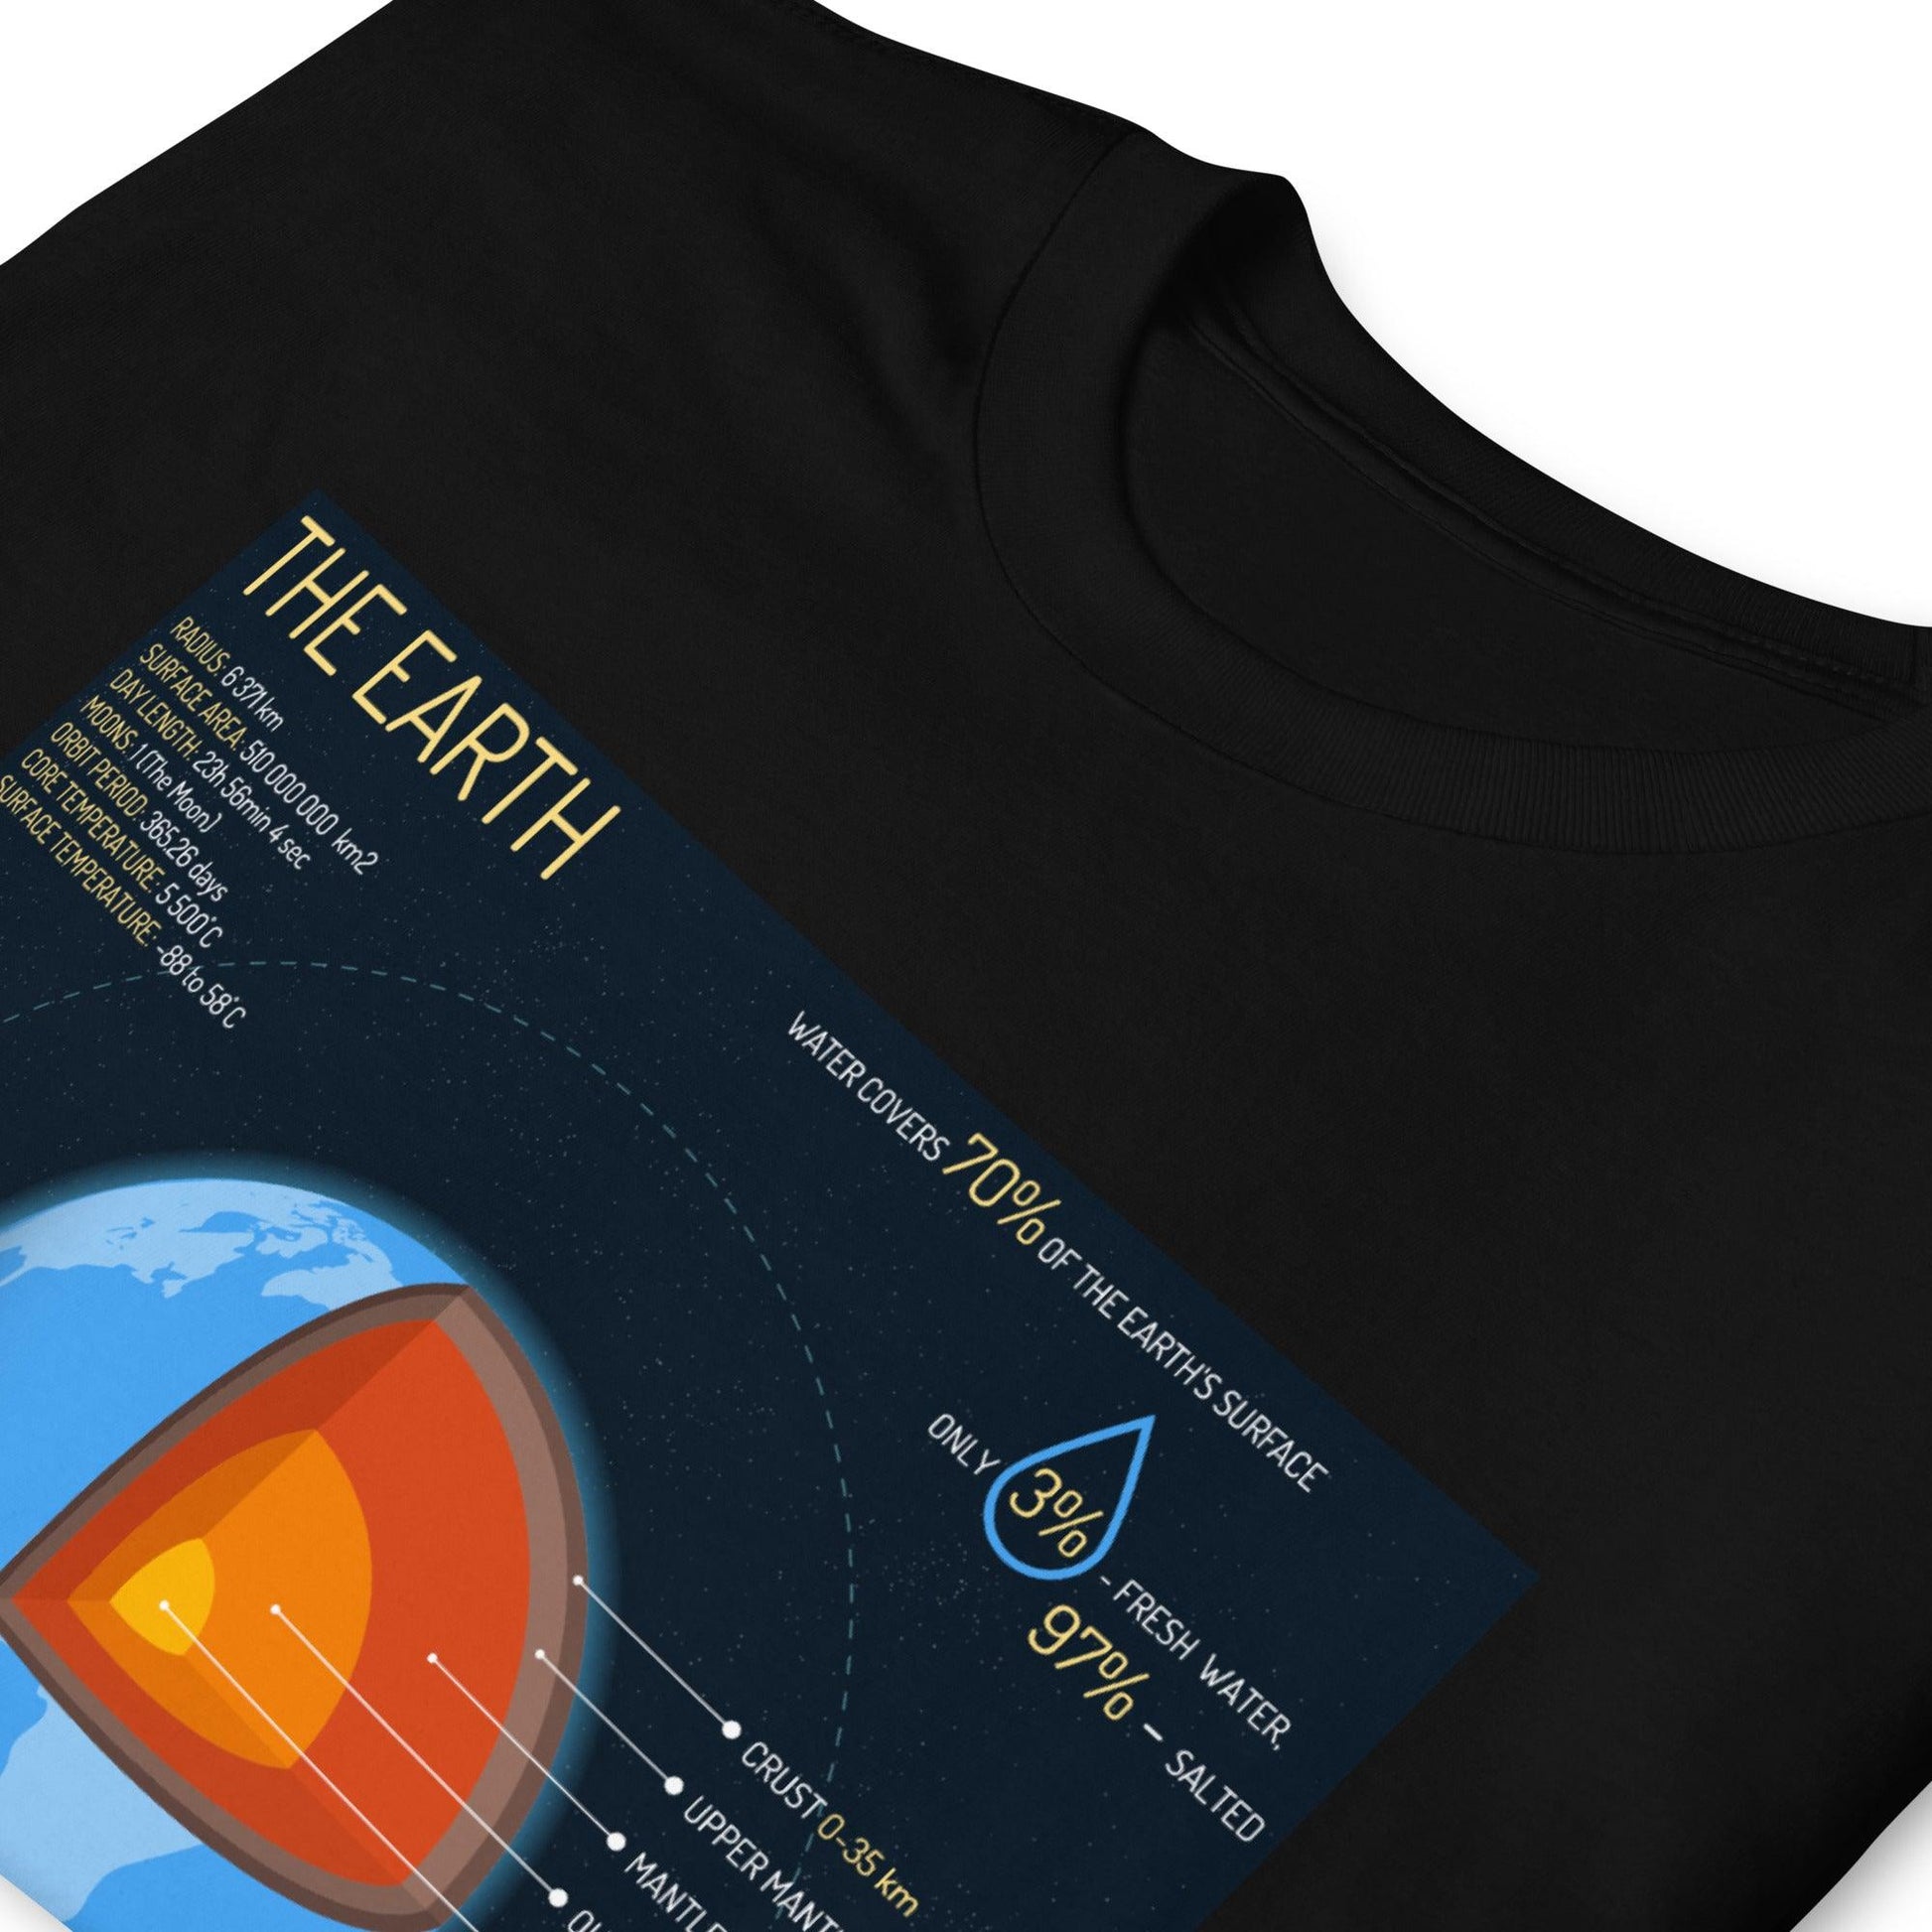 Earth - Astro TShirts